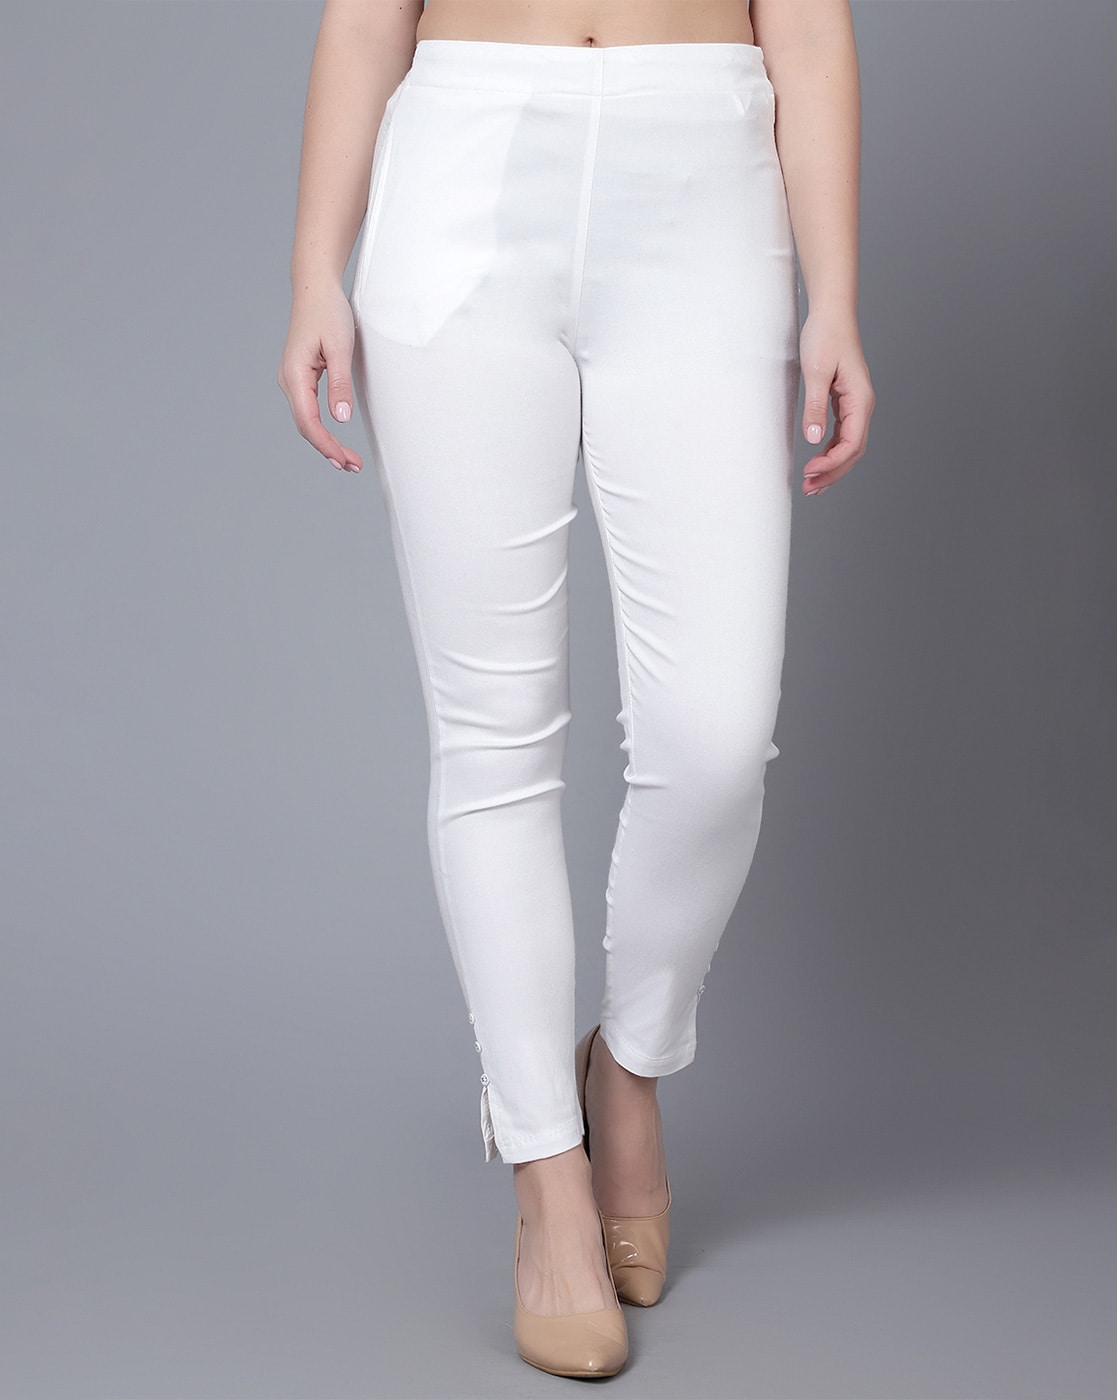 Buy Off White Trousers  Pants for Women by BANI WOMEN Online  Ajiocom